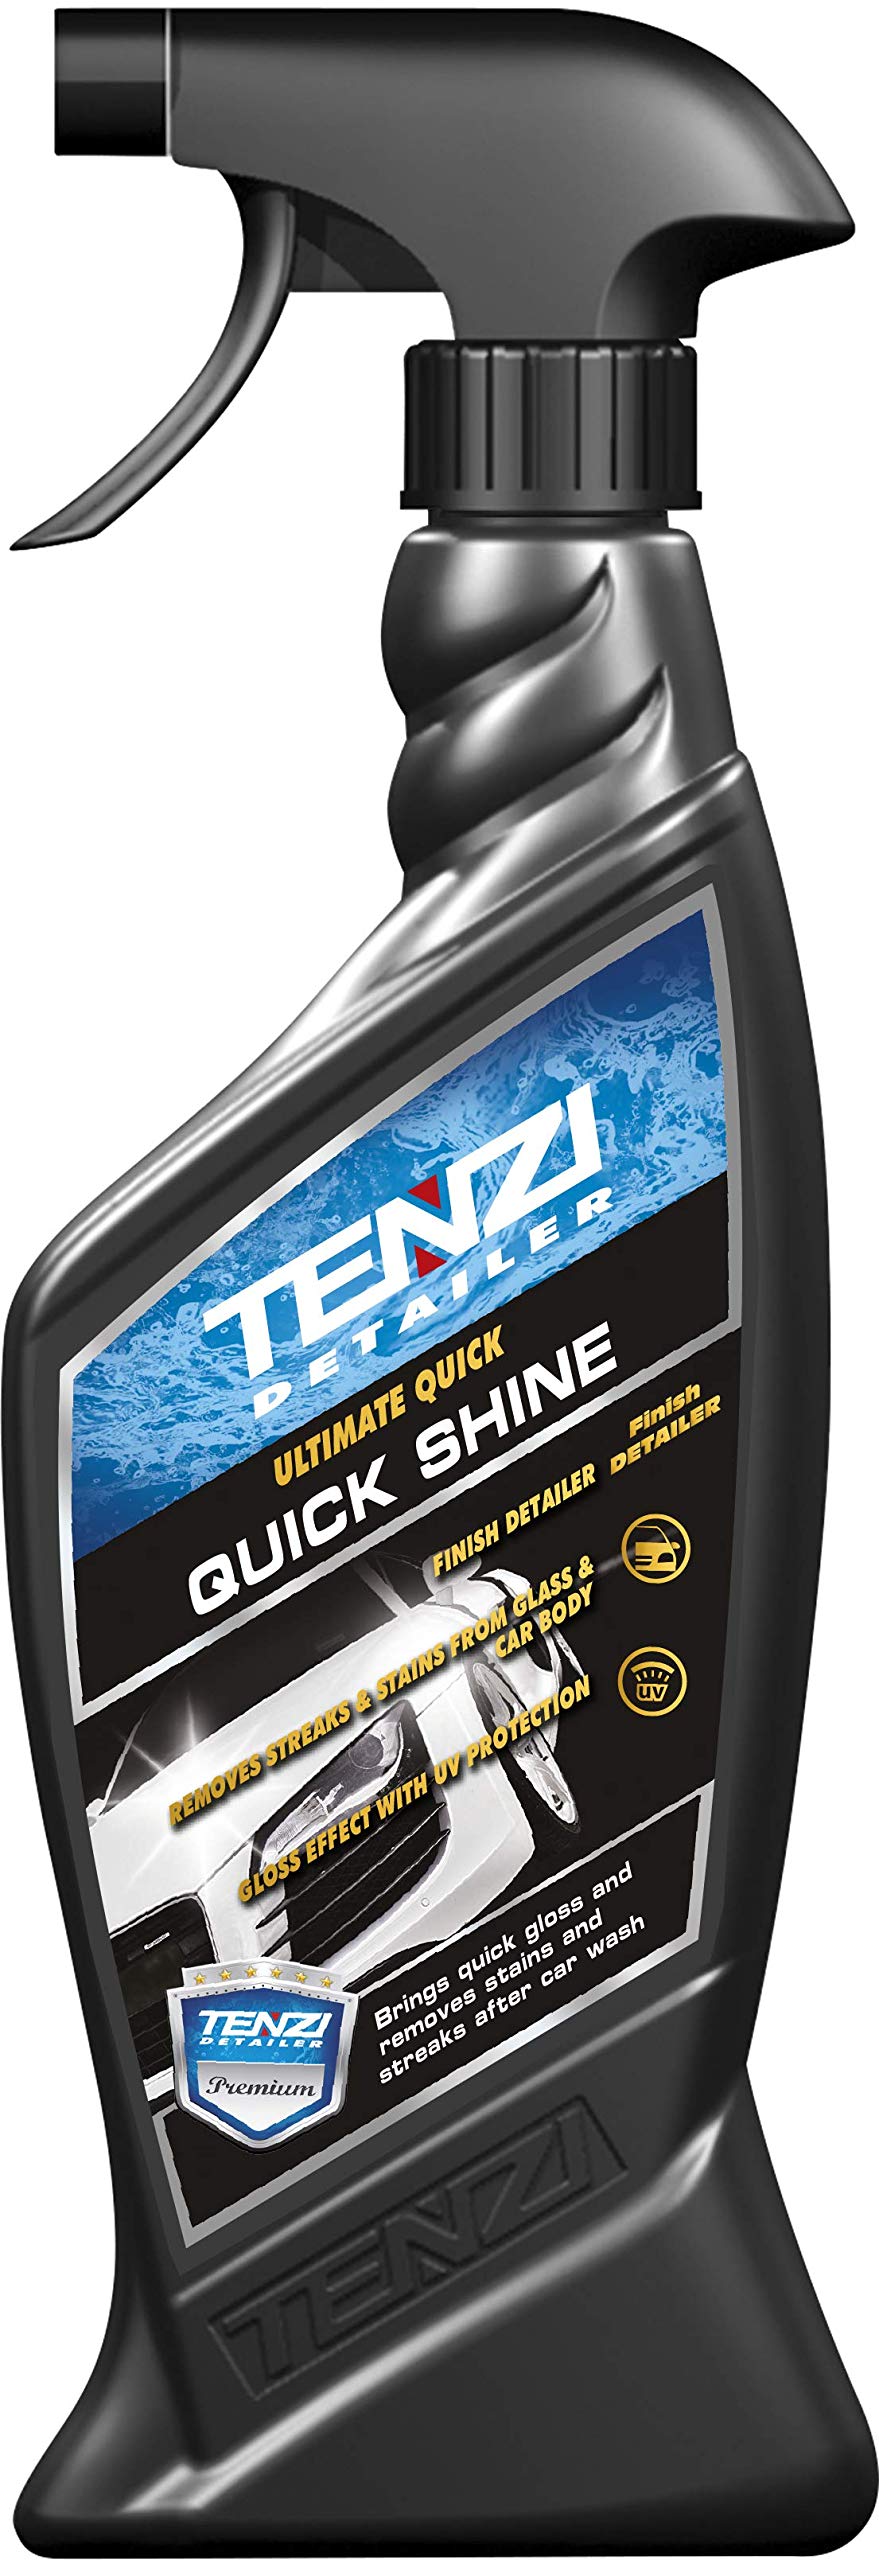 TENZI Detailer - Quick Shine - Sofort Glanz - Körperpflege von TENZI